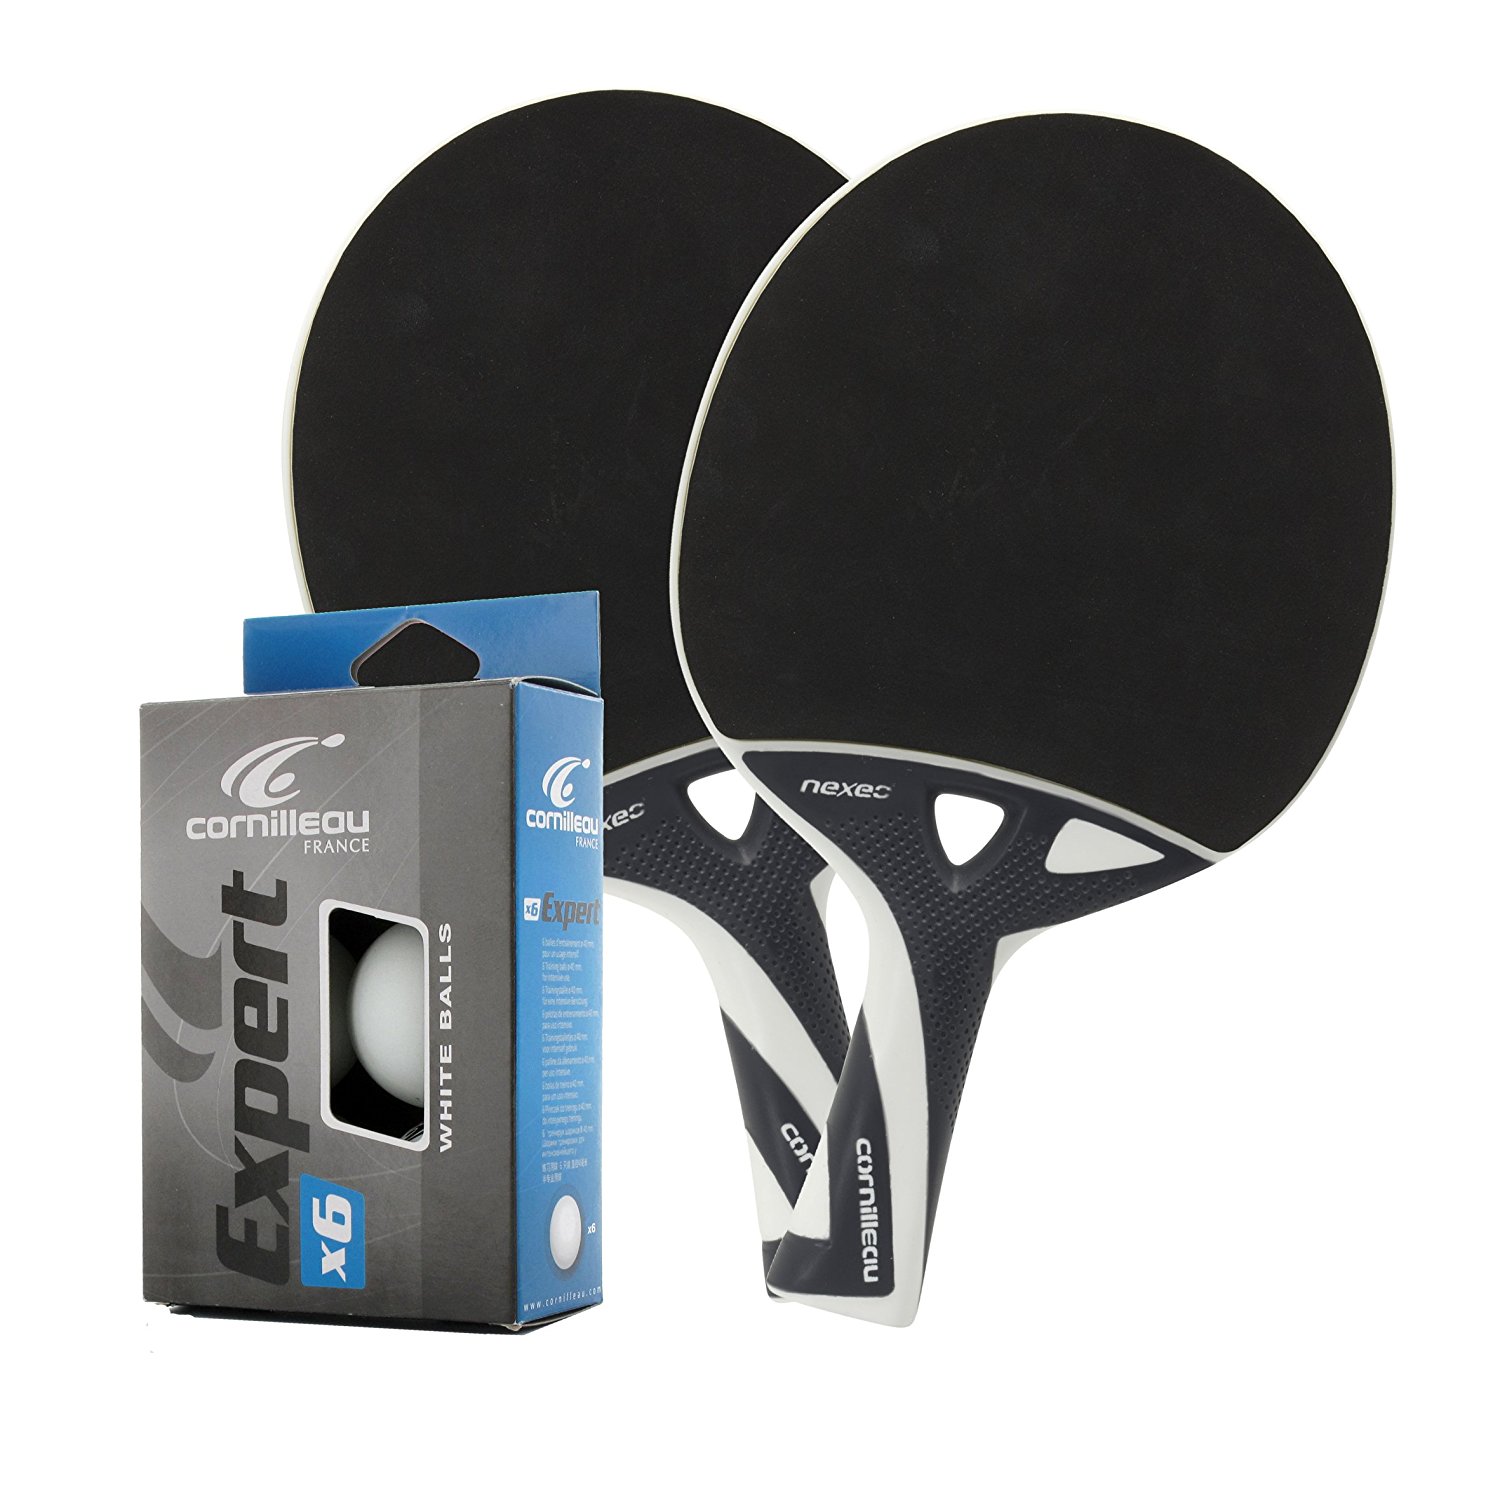 NEU Bälle Cornilleau Nexeo X70 Outdoor Tischtennisschläger 2er Set inkl 